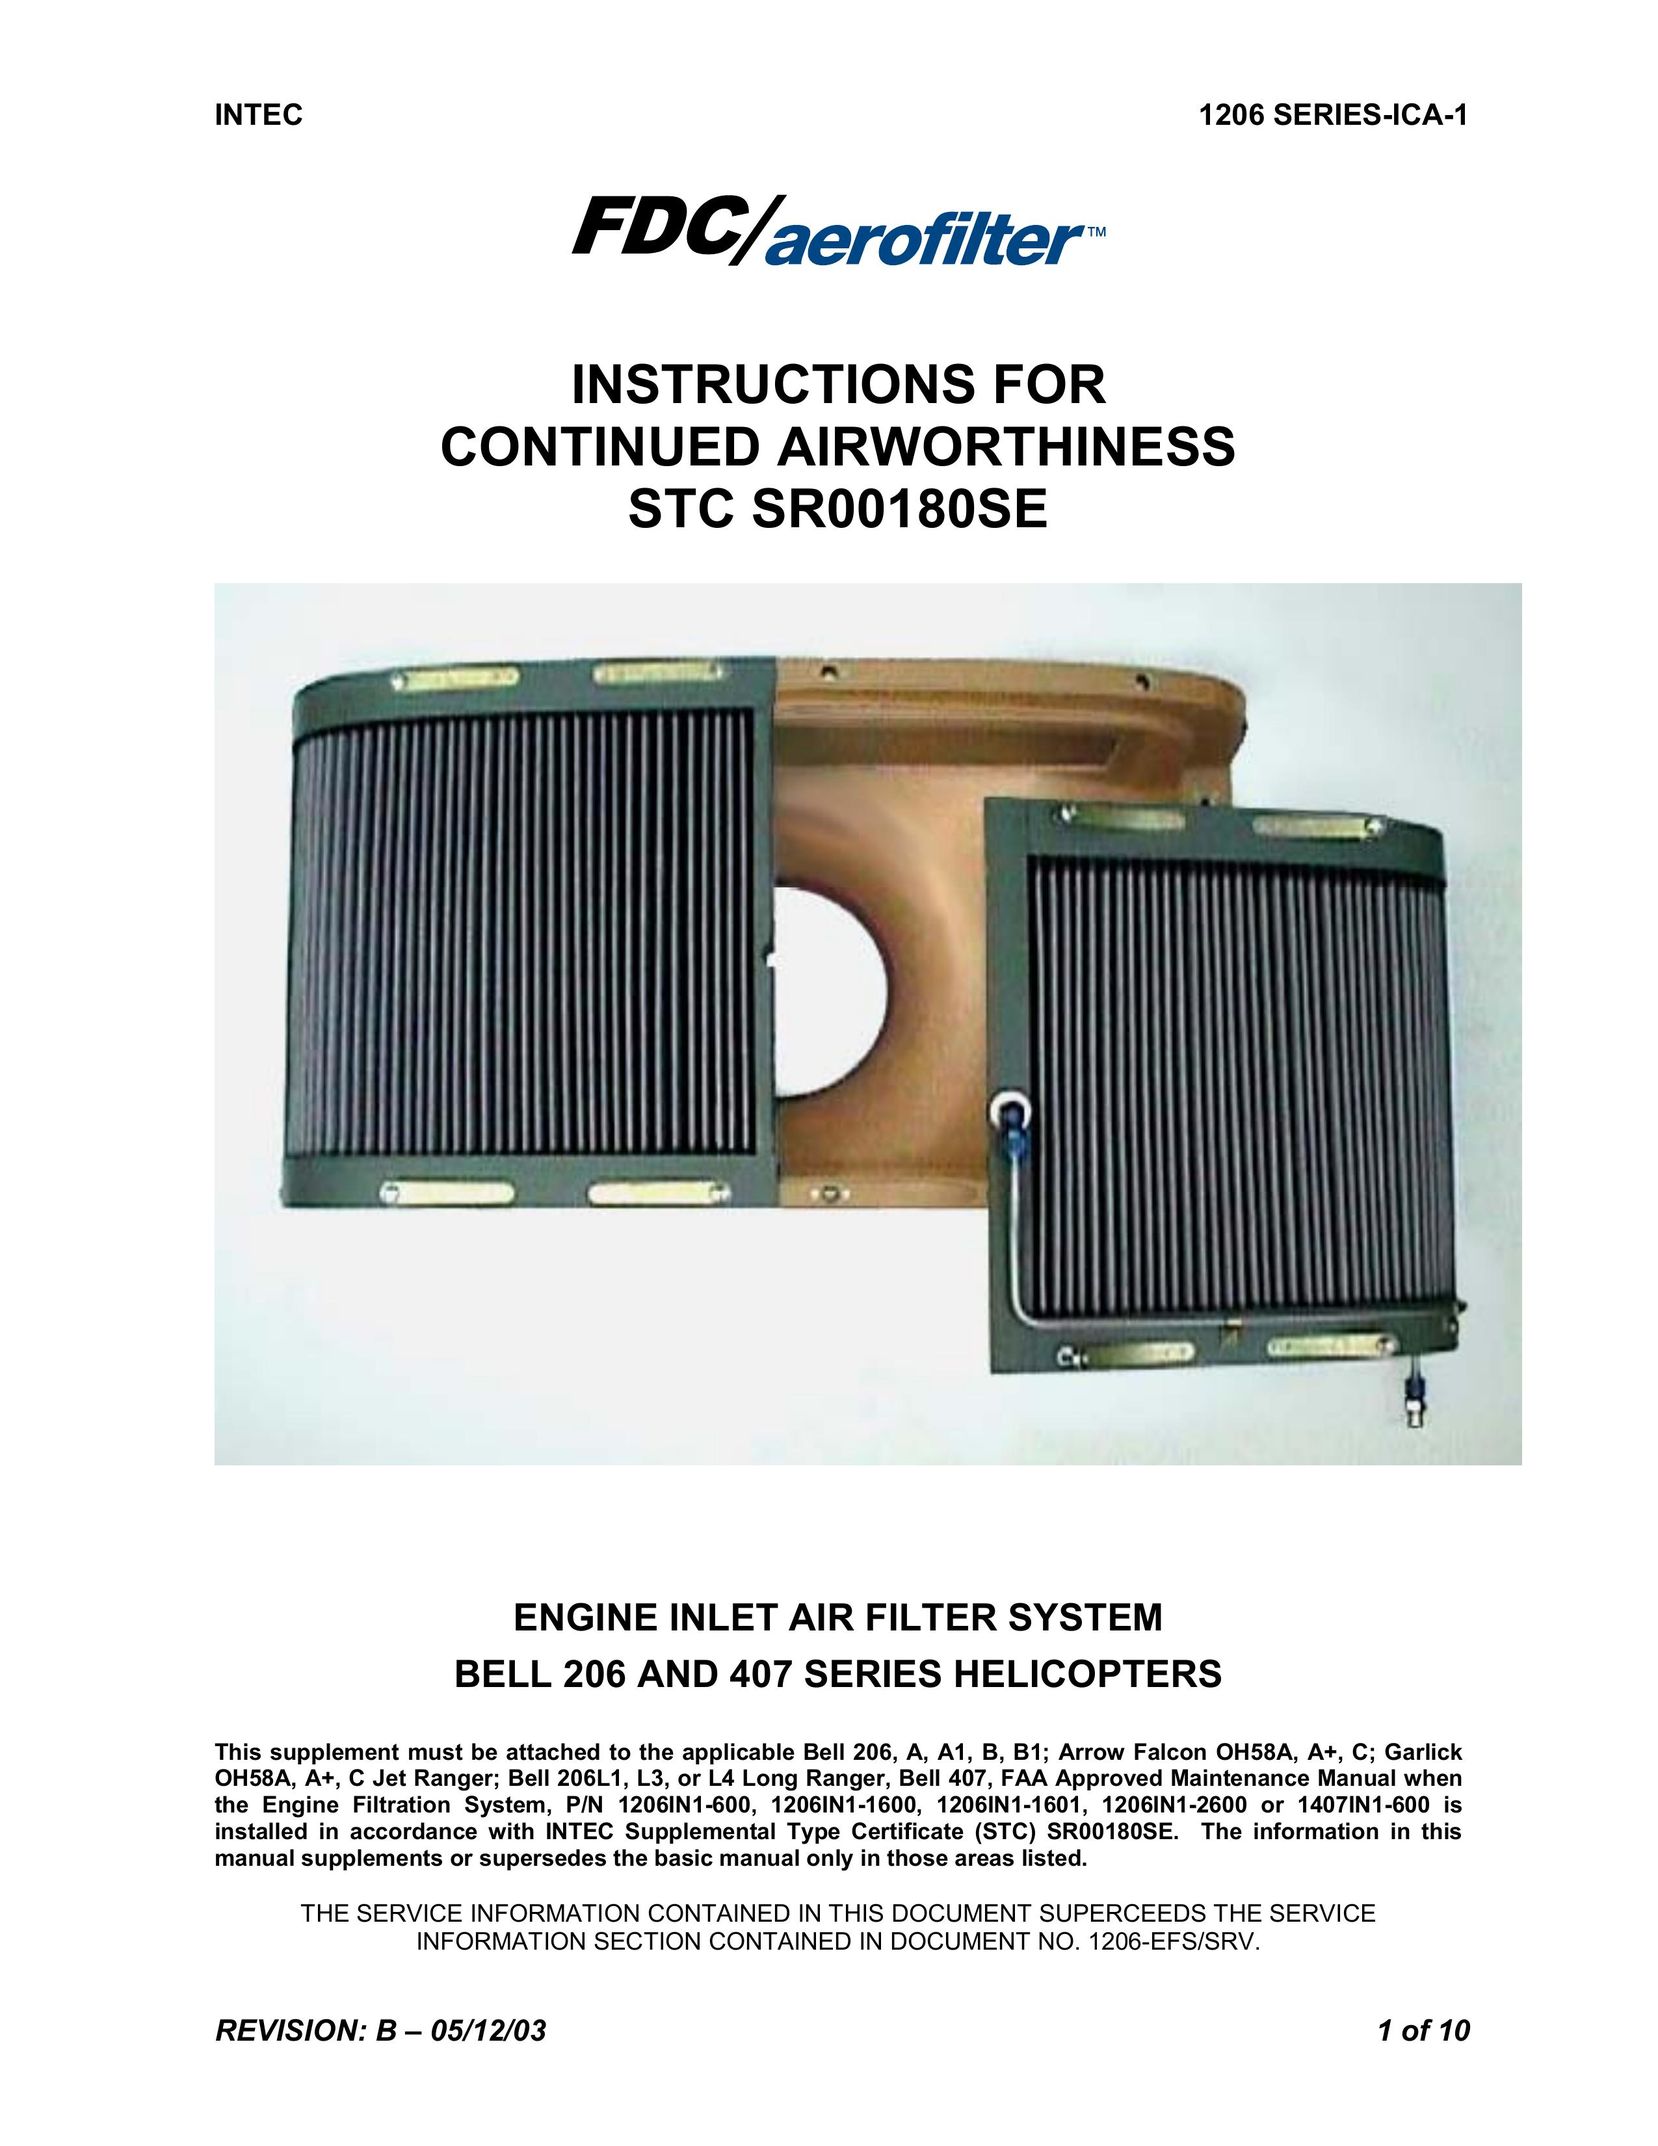 Intec STC SR00180SE Air Cleaner User Manual